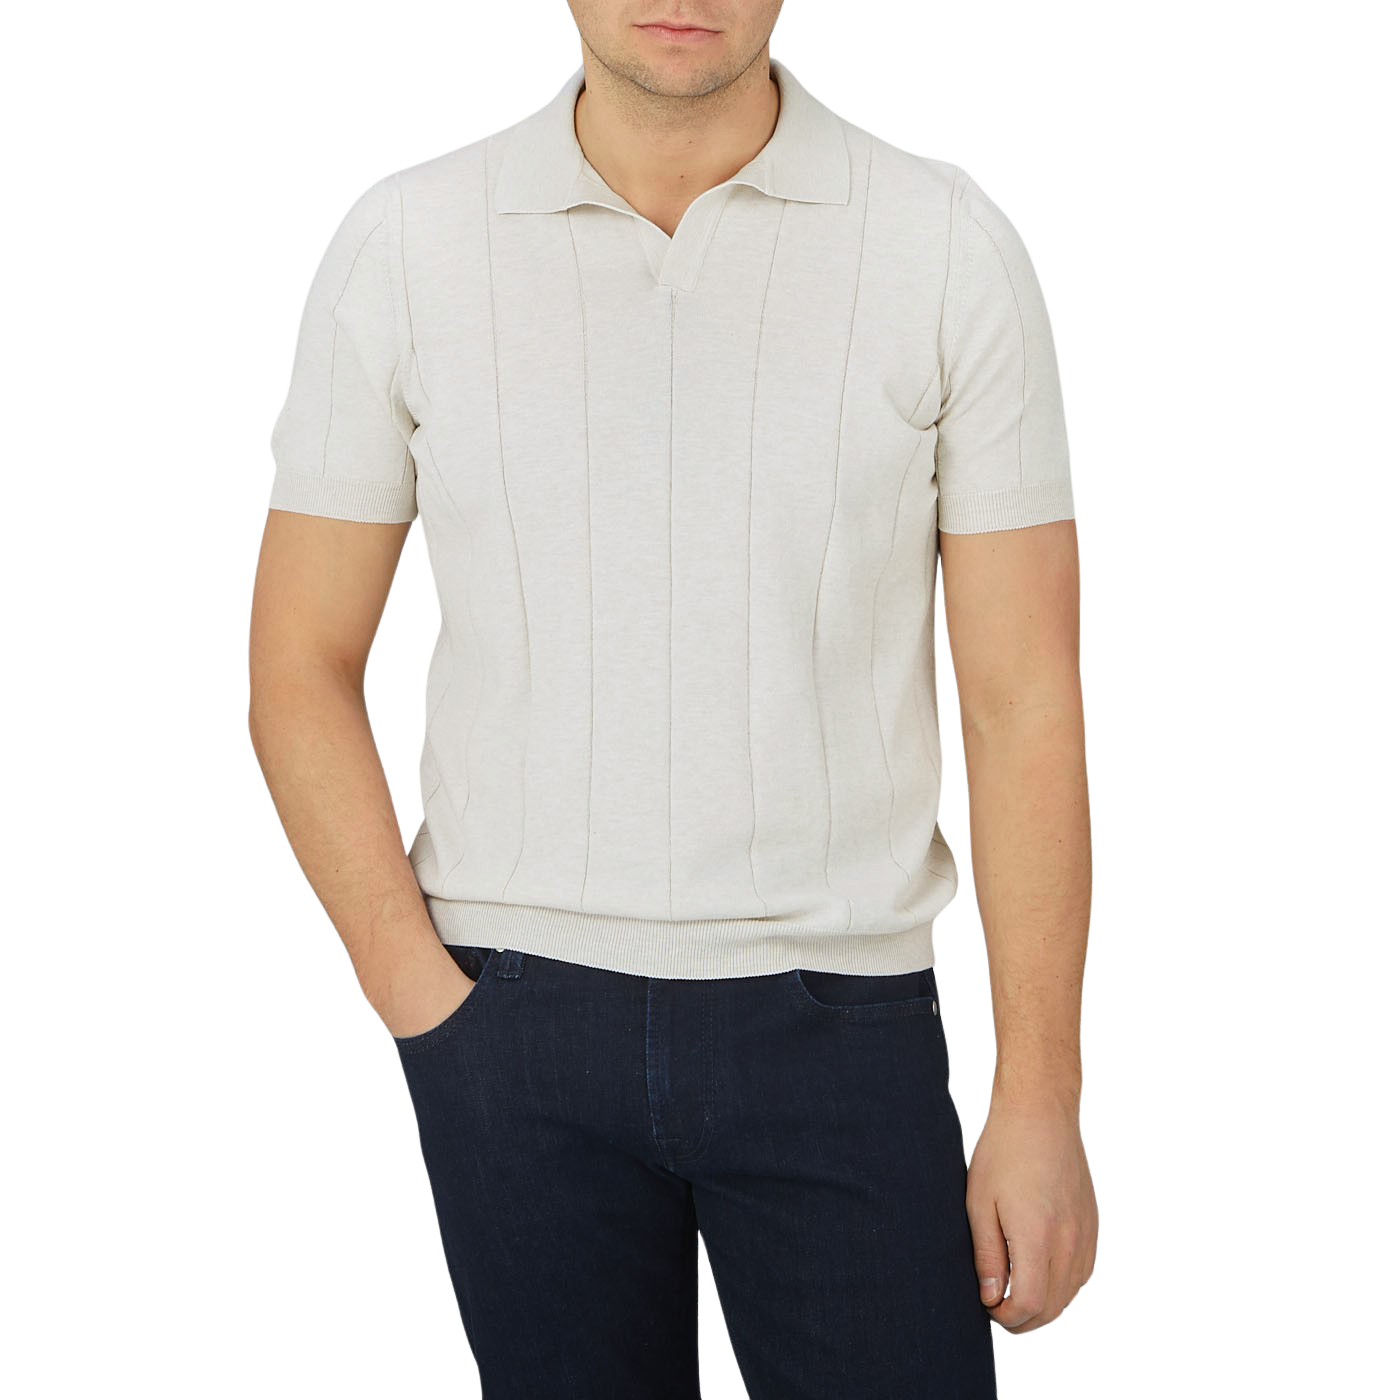 A man wearing a Gran Sasso Cream Cotton Capri Collar Polo Shirt.